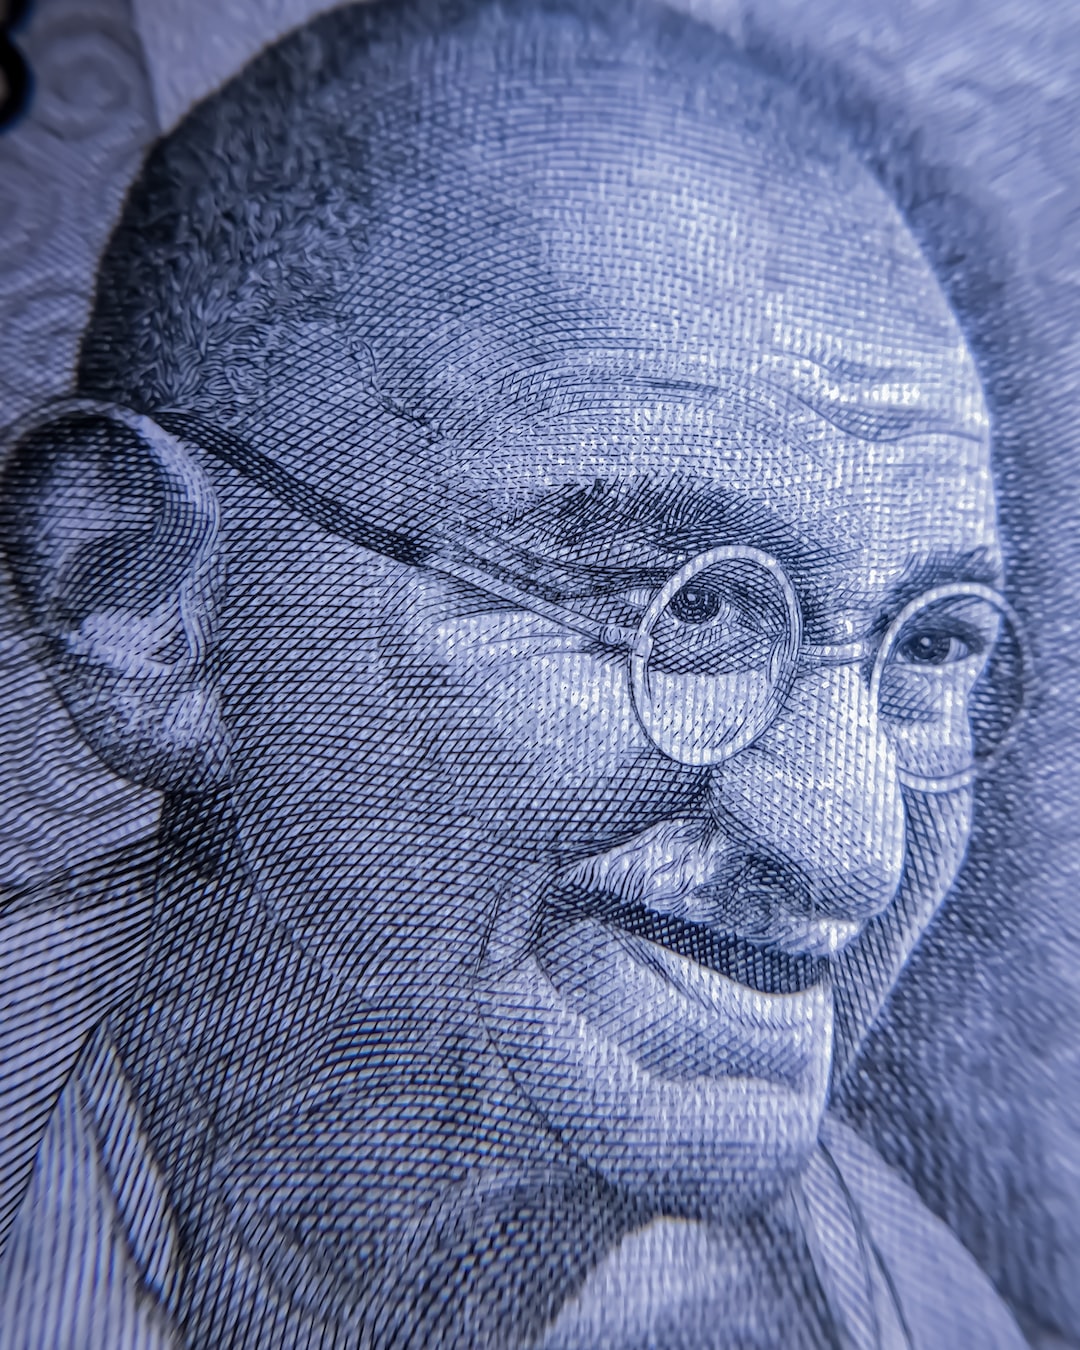 Macro Gandhi